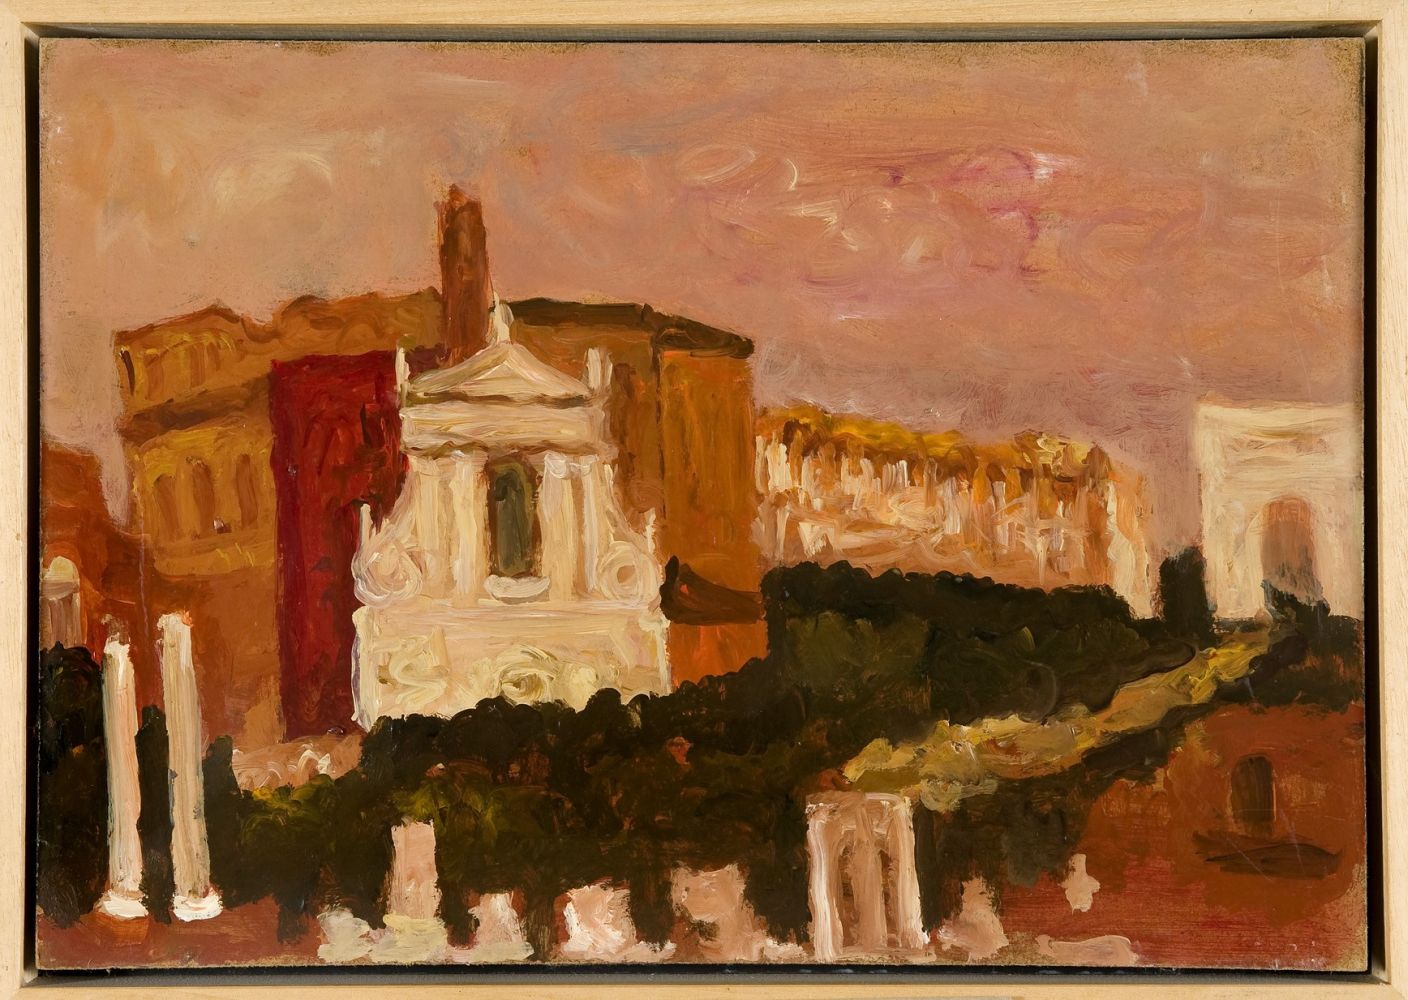 CARLO QUAGLIA (Terni, 1903 - Rome, 1970): Roman Forum (view on S. Francesca Romana Church), 1966